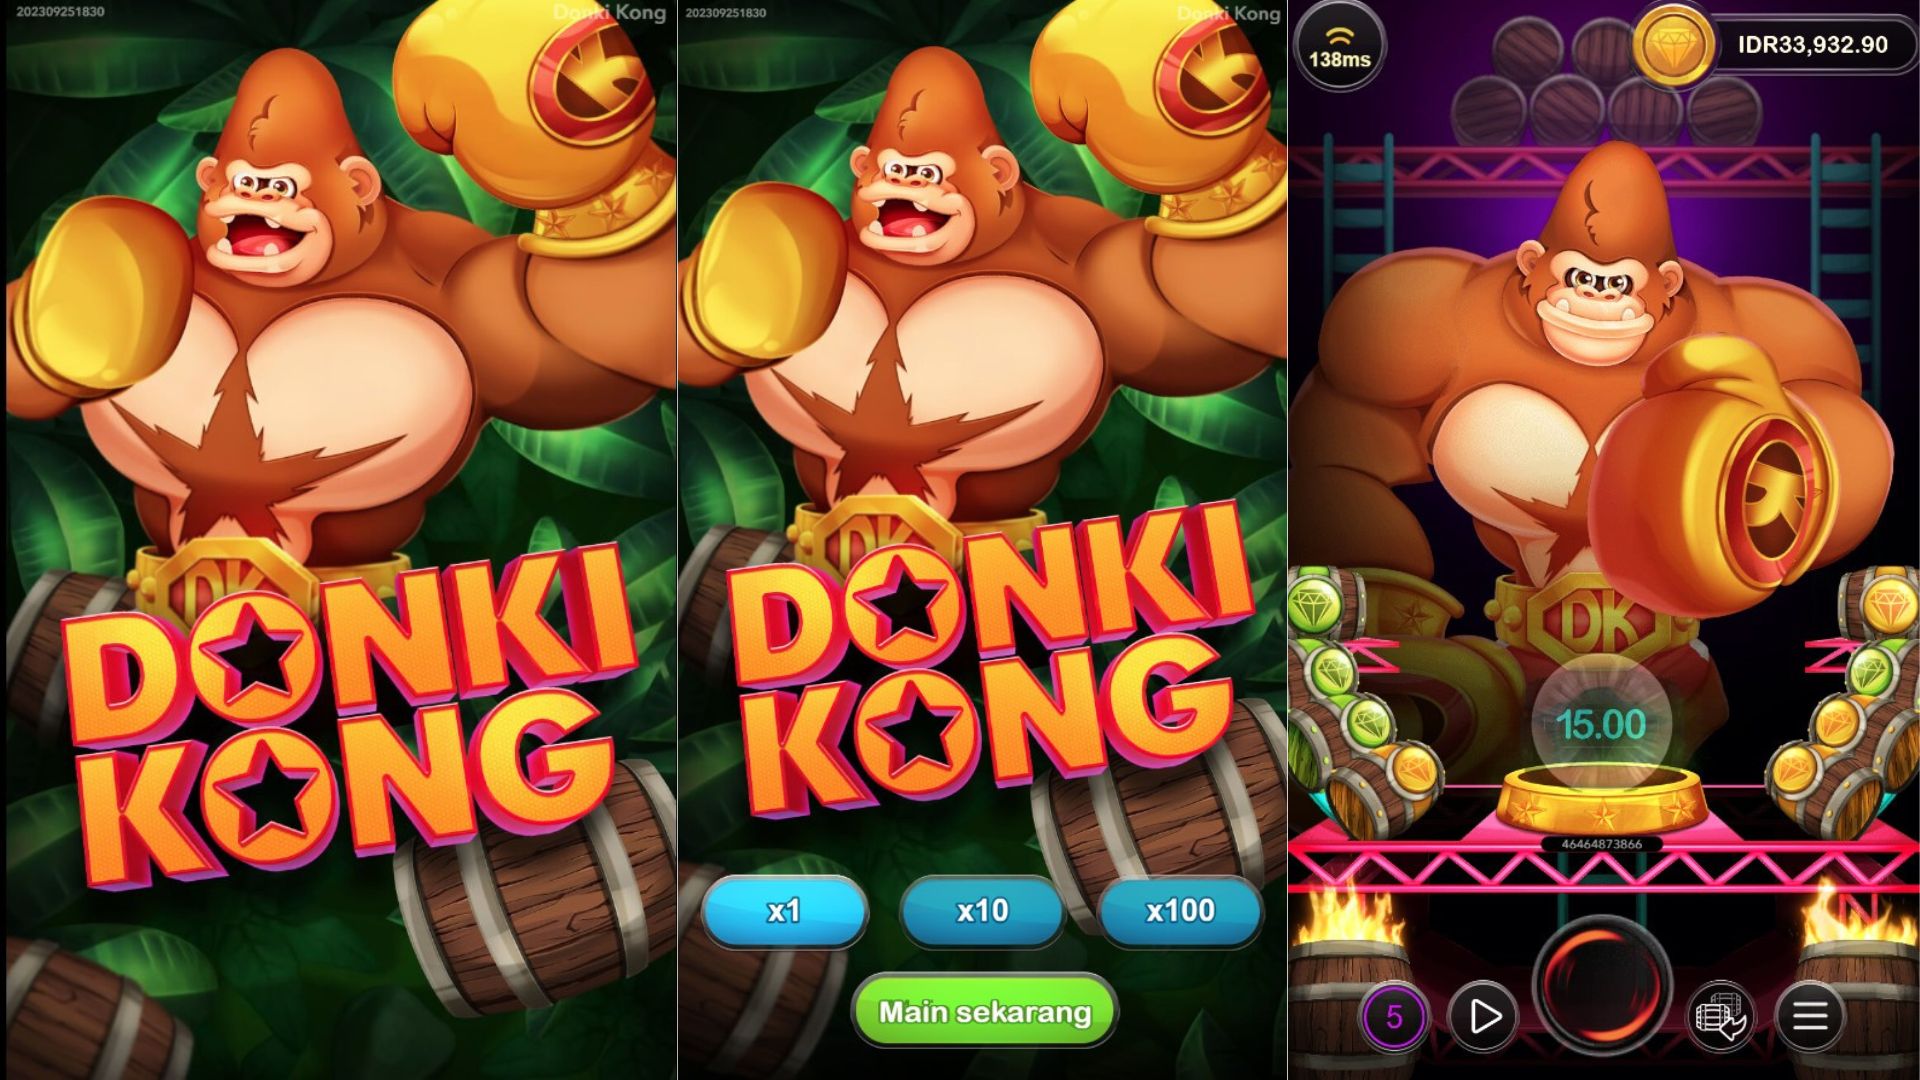 gameplay slot donki kong